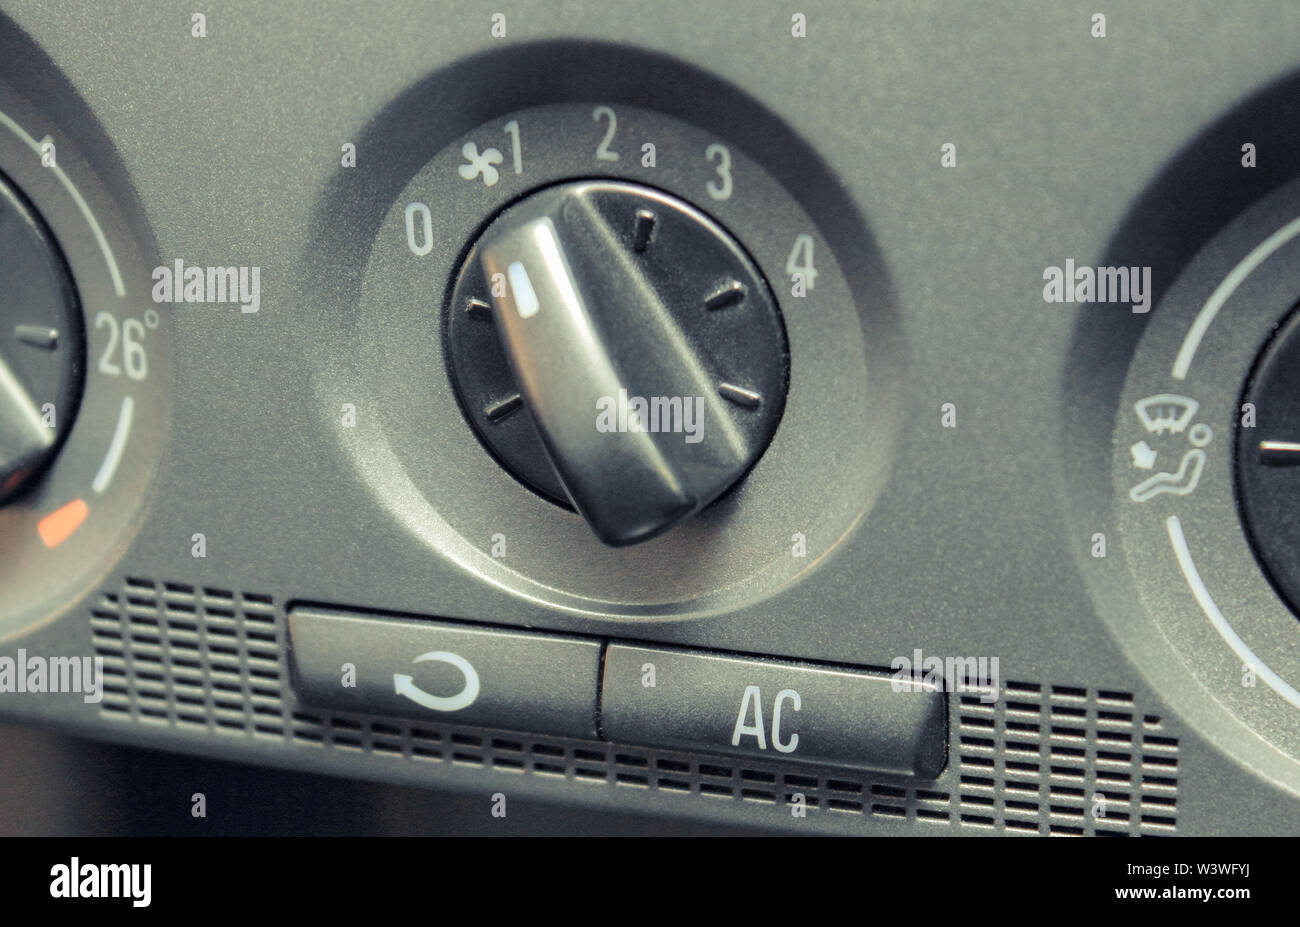 Modernes auto Lüftung und Klimaanlage auf Systemsteuerung Stockfotografie -  Alamy